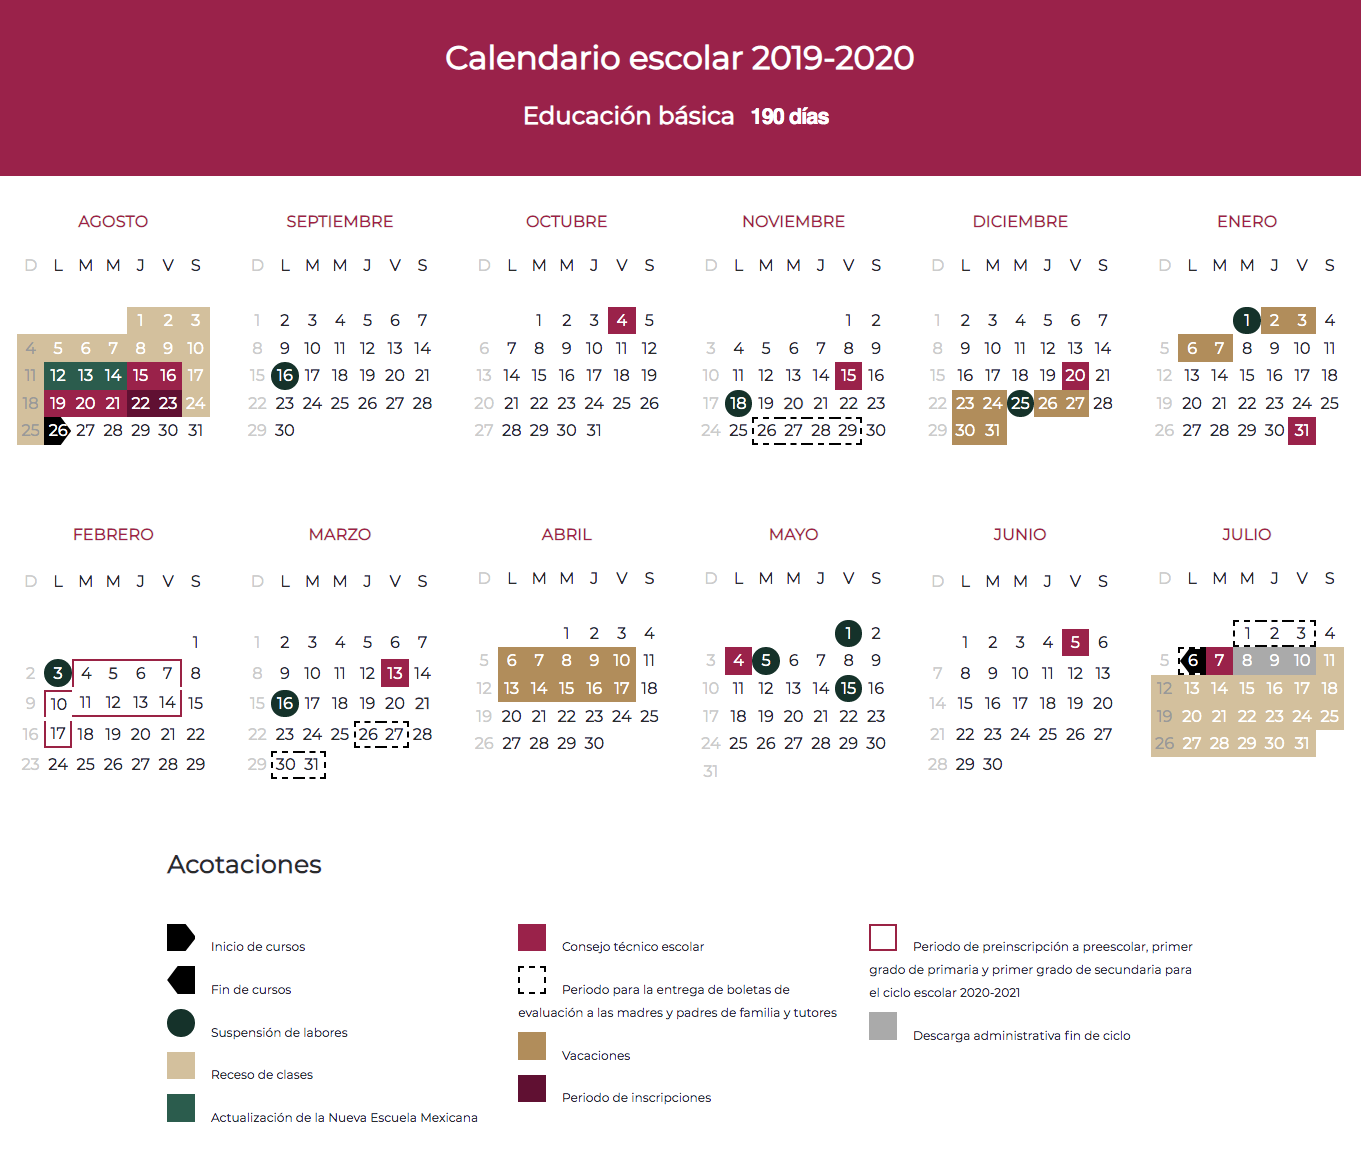 Calendario escolar 19-20 Jalisco para imprimir | UN1ÓN ...